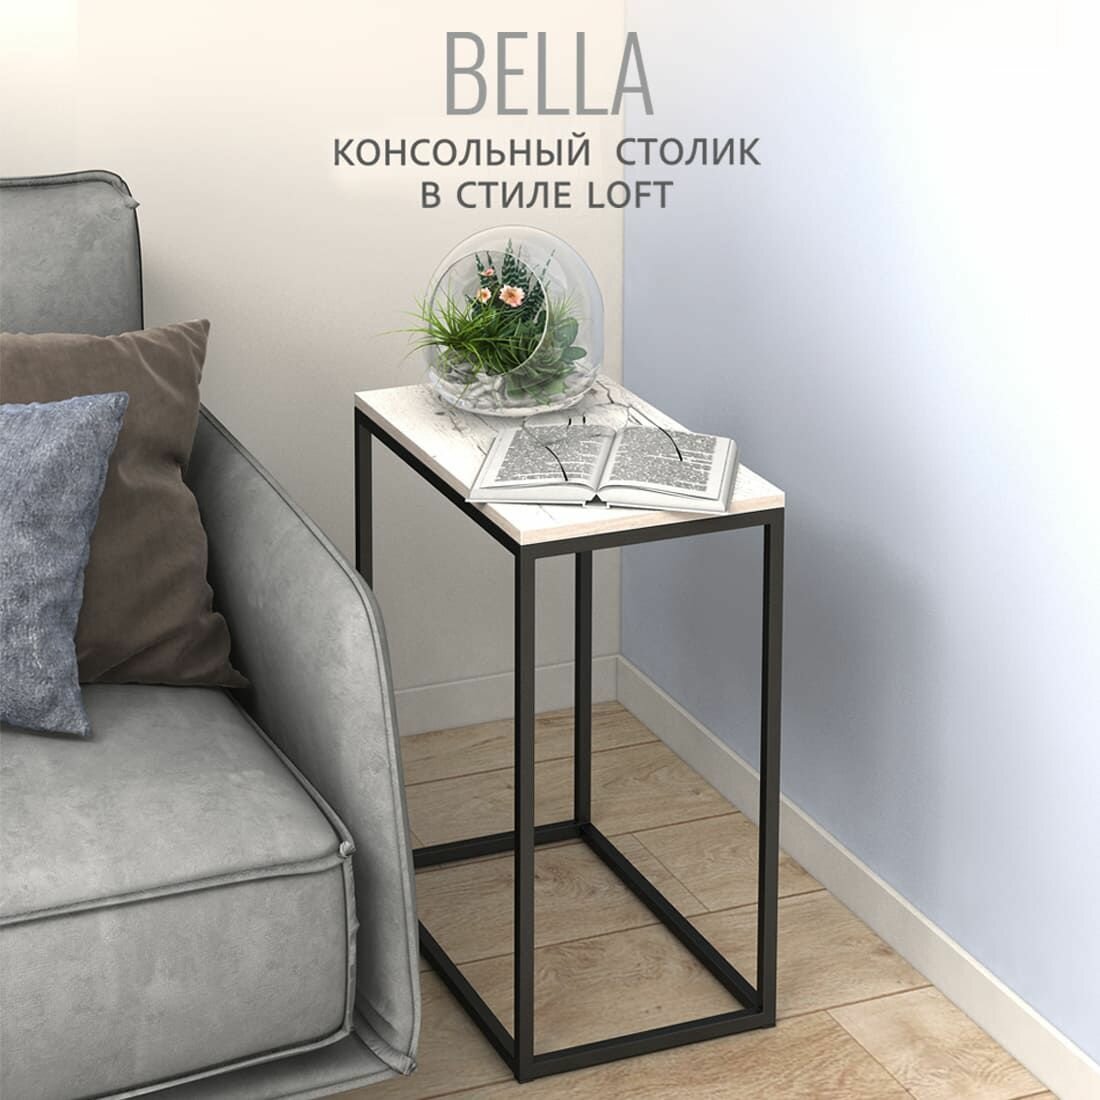 Журнальный столик BELLA loft, светло-серый, приставной, консольный столик, 60x50x30 см, Гростат